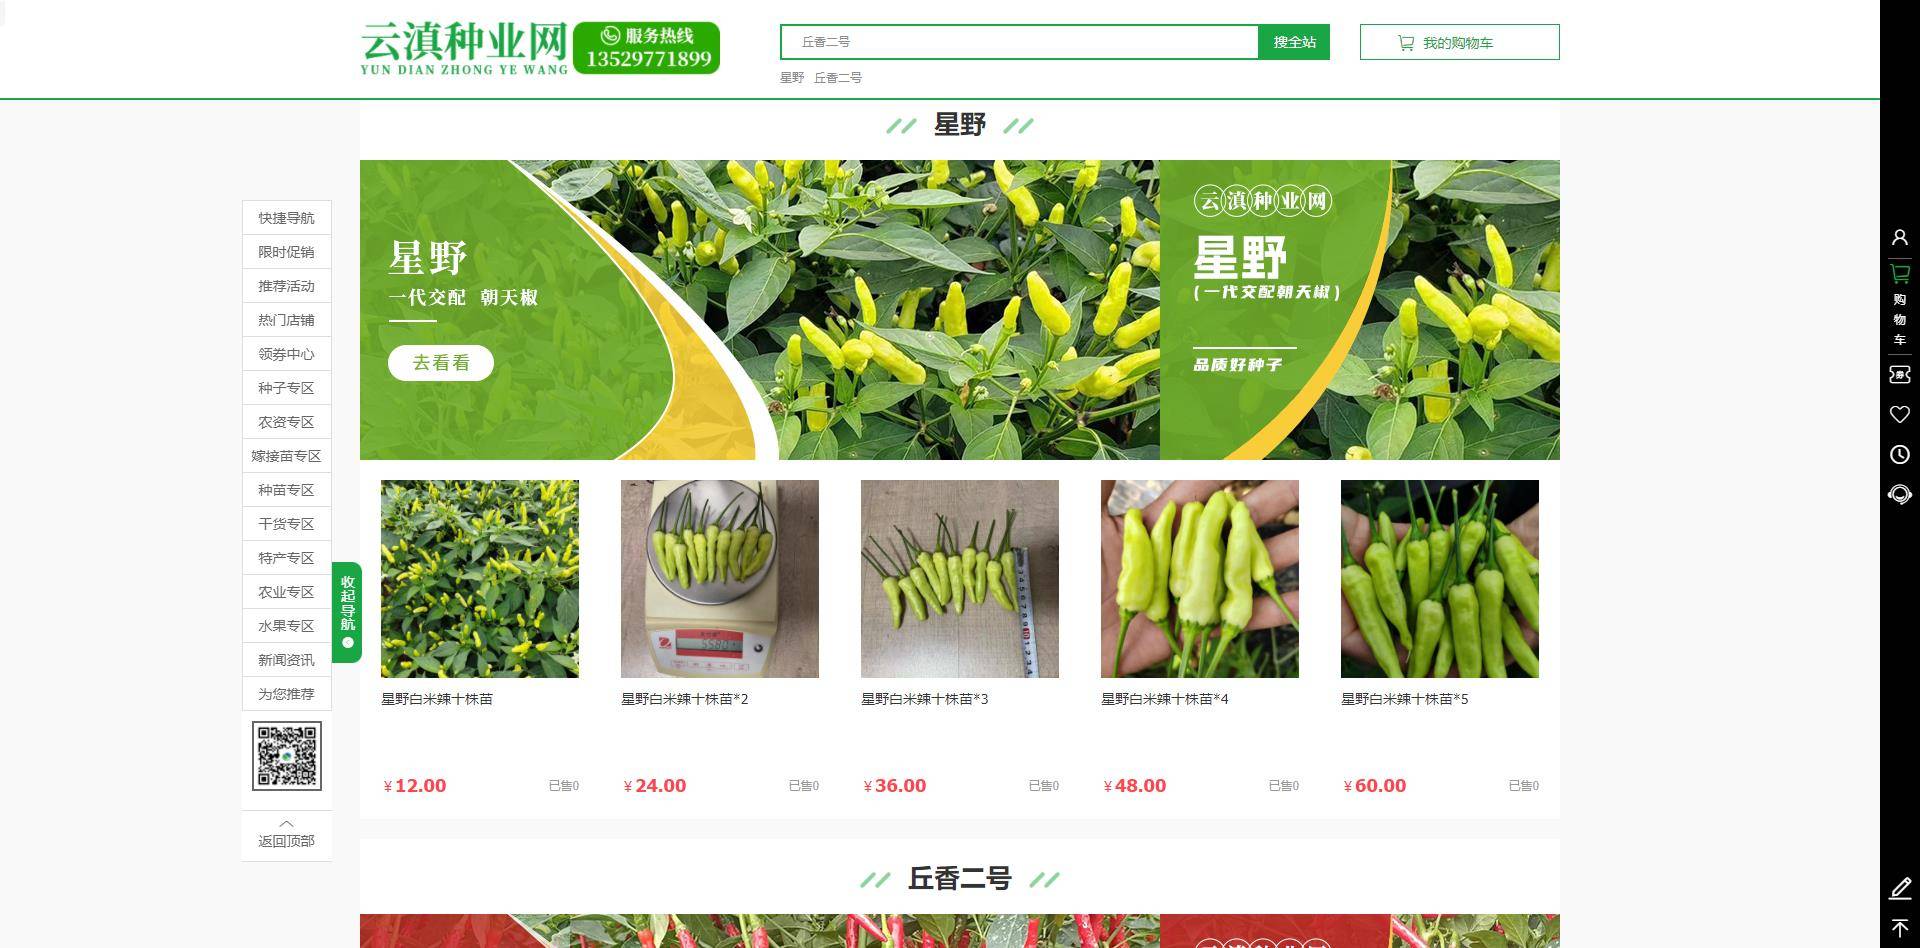 天博官方网站云滇种业网：助力新颖农业成长为农人带来歉收与繁华(图2)